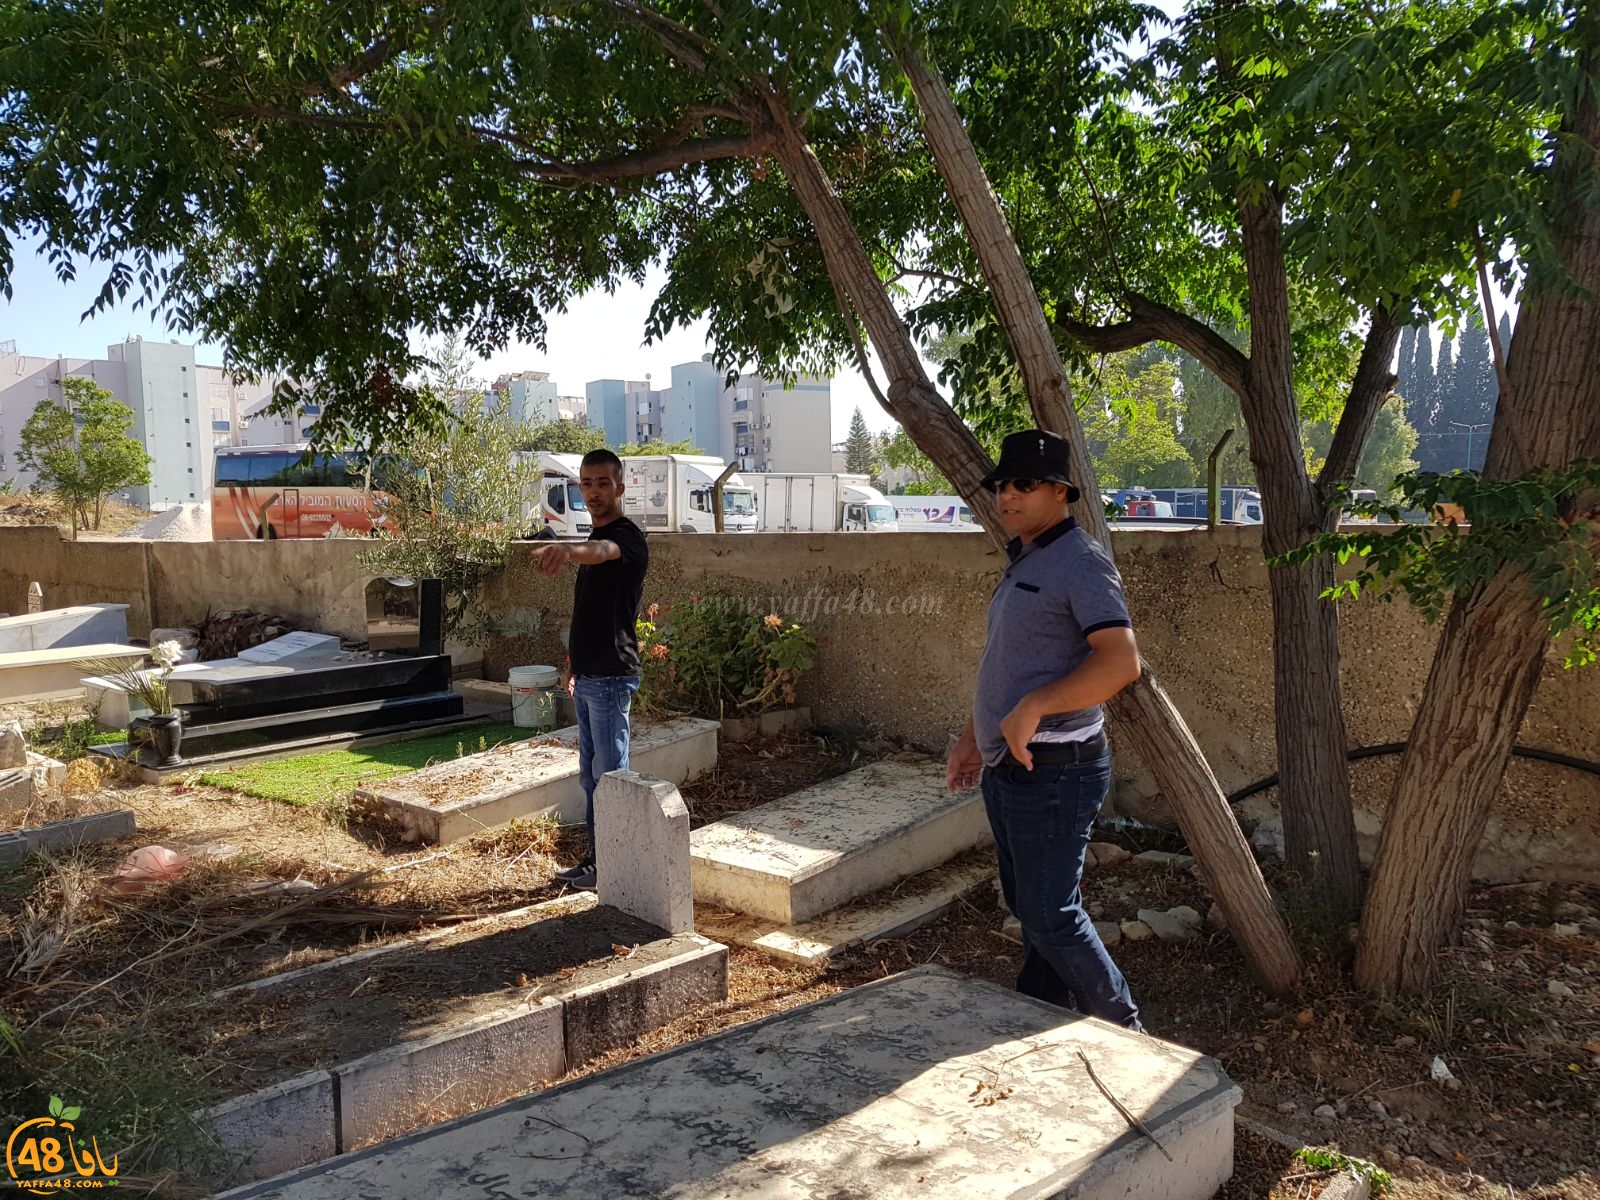   بالصور: شباب آل أبو صويص وآل الشمالي في حملة لتنظيف مقبرة النبي صالح بالرملة